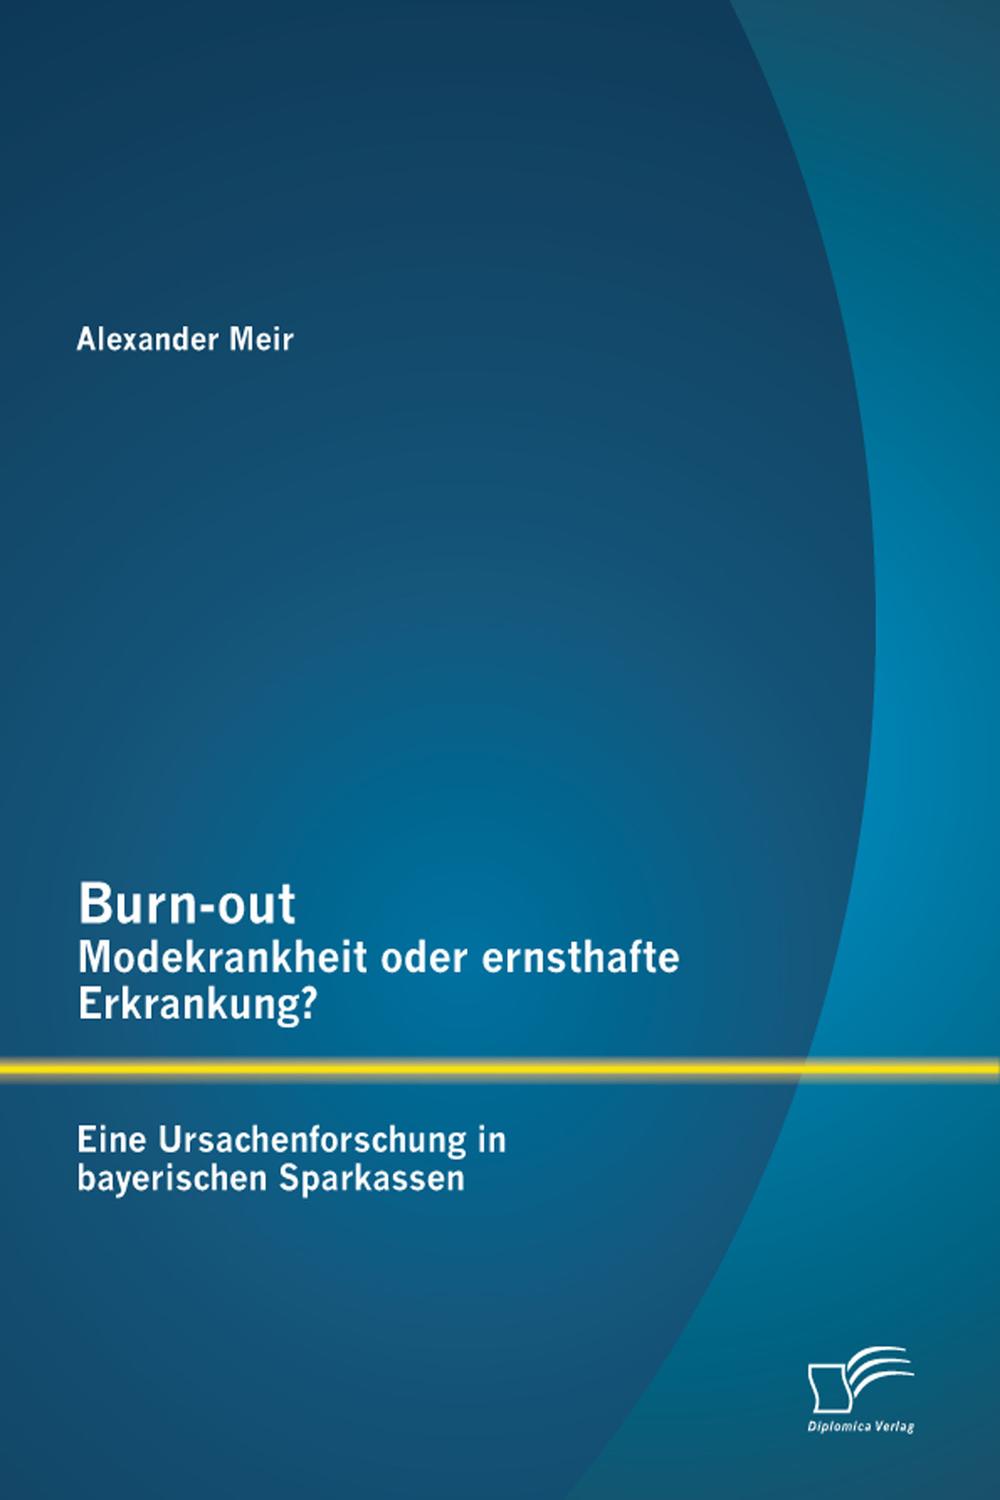 Burn-out – Modekrankheit oder ernsthafte Erkrankung? Eine Ursachenforschung in bayerischen Sparkassen - Alexander Meir